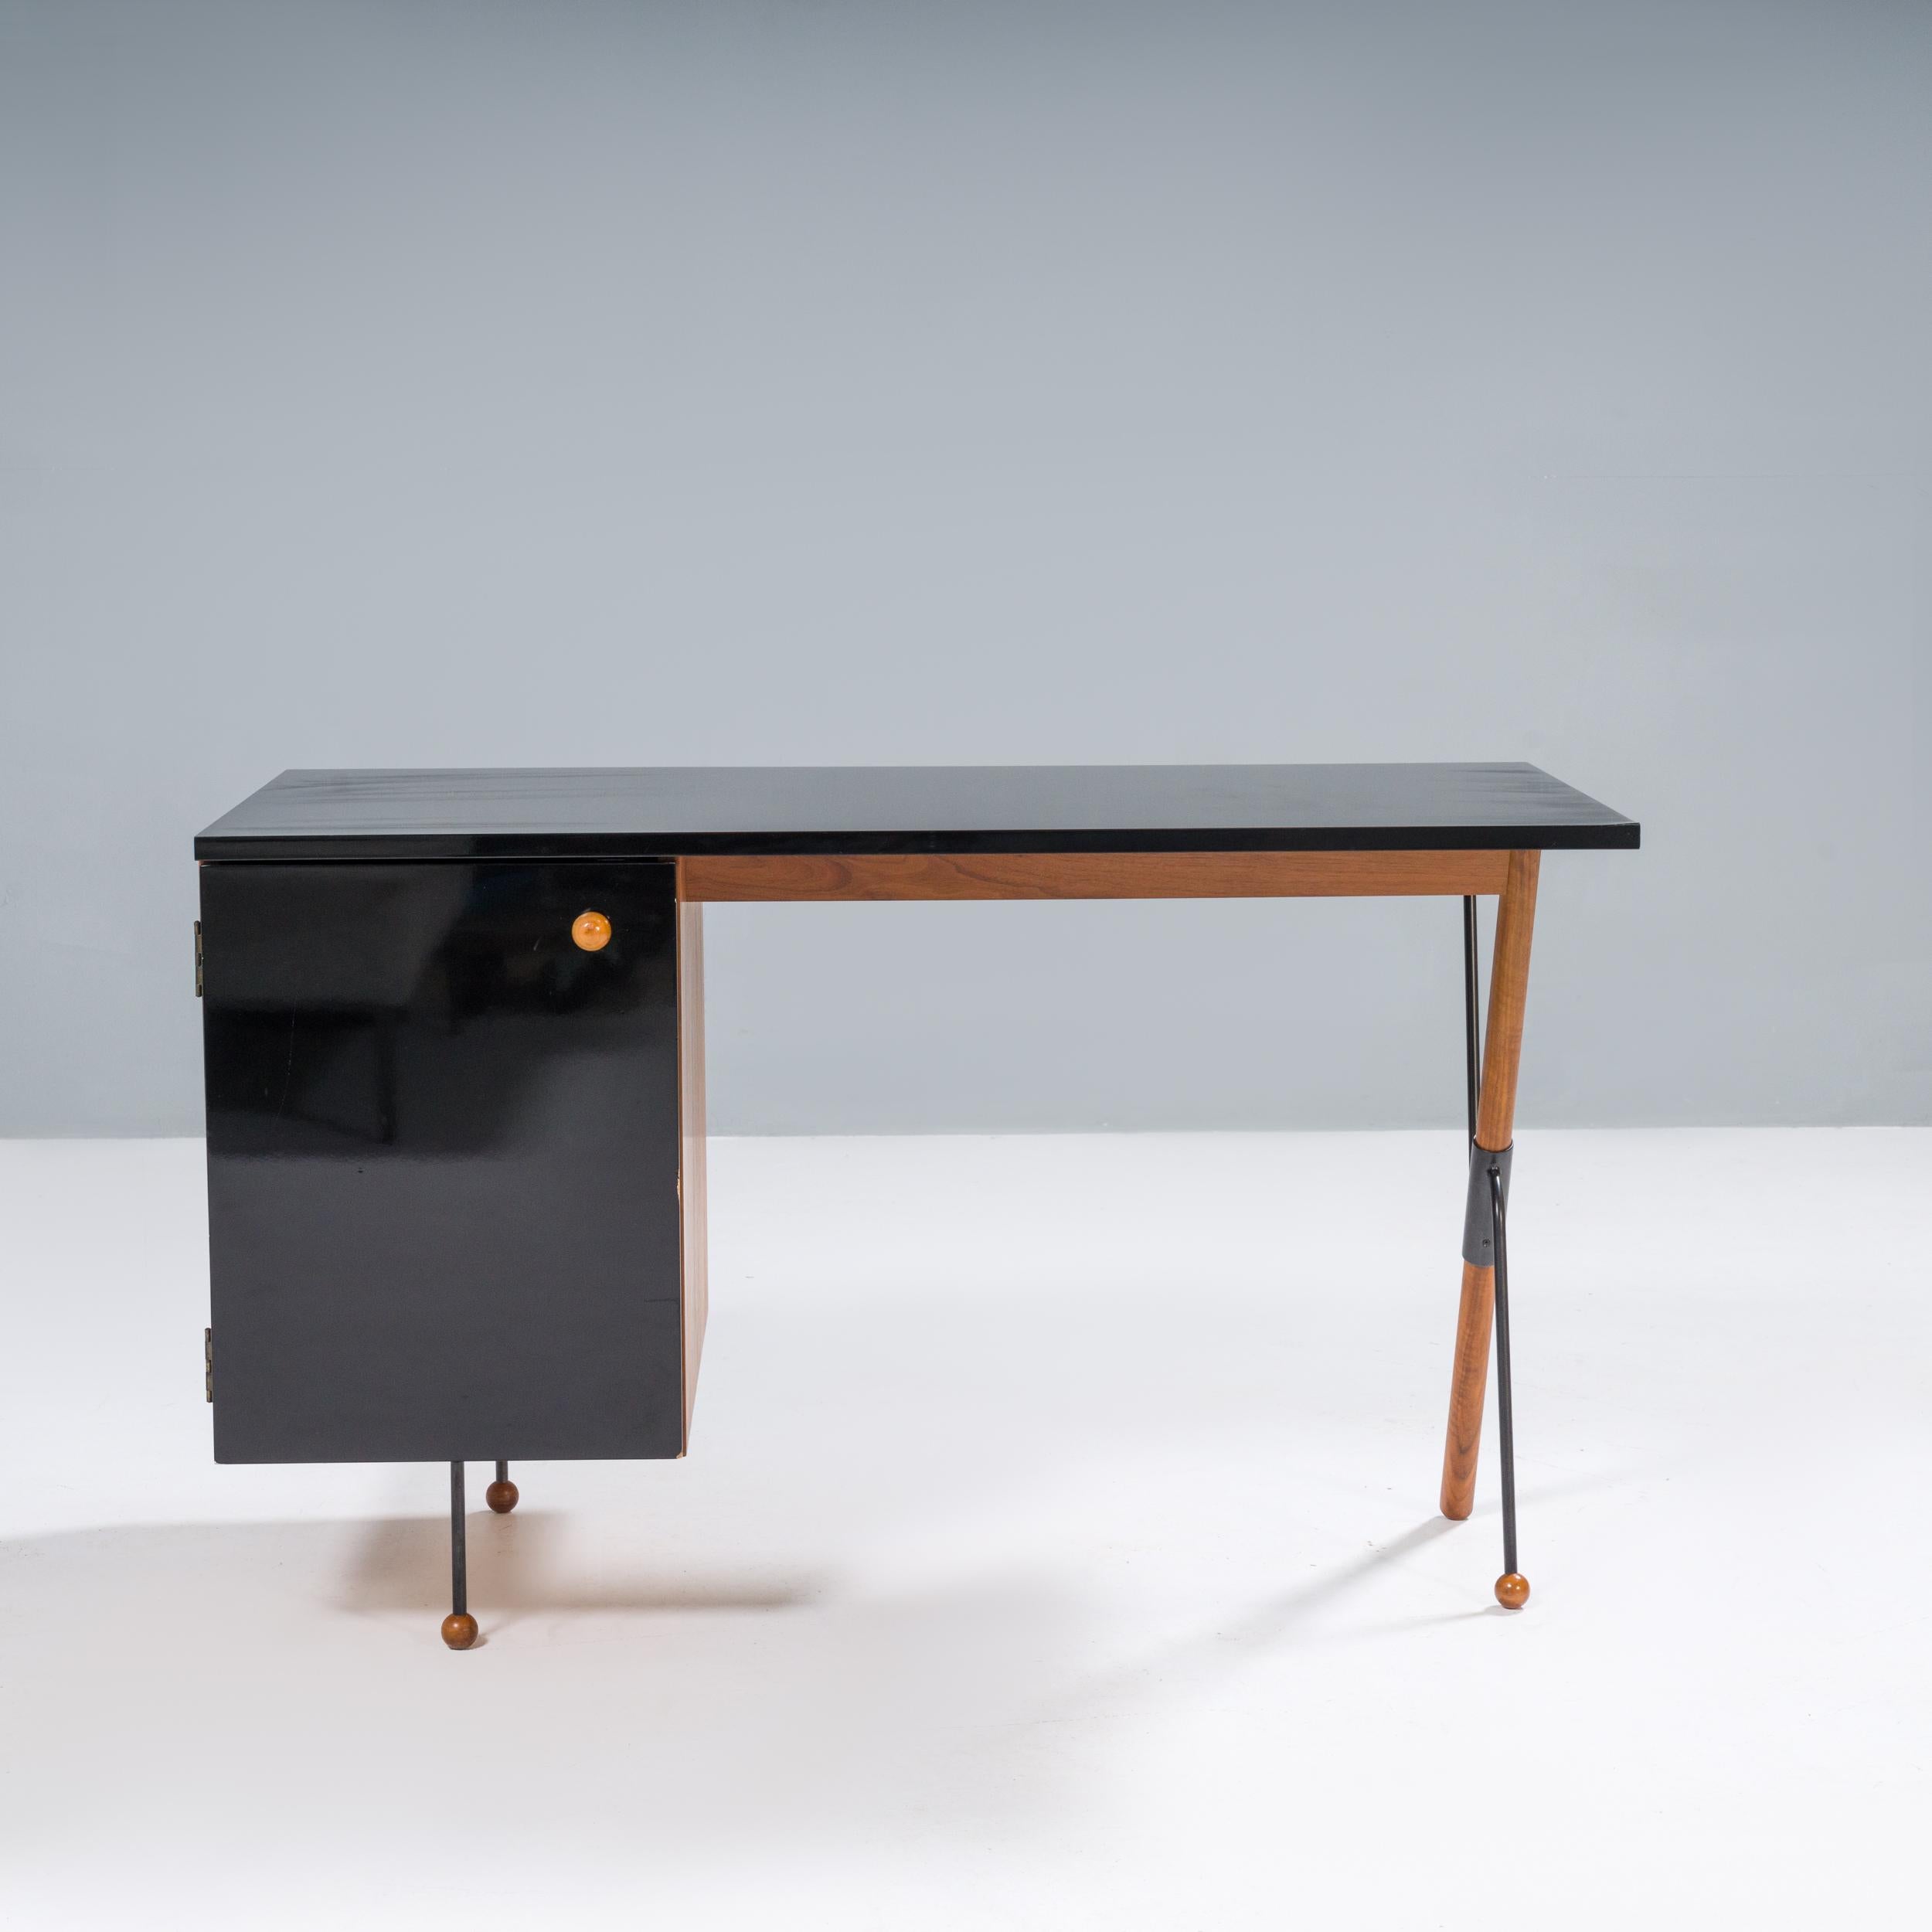 Der 1952 von Greta M. Grossman entworfene Schreibtisch erhielt den Namen 62, weil er in seiner Designästhetik seiner Zeit ein Jahrzehnt voraus war.

Der 62er-Schreibtisch ist heute ein ikonisches Möbelstück aus der Mitte des Jahrhunderts und